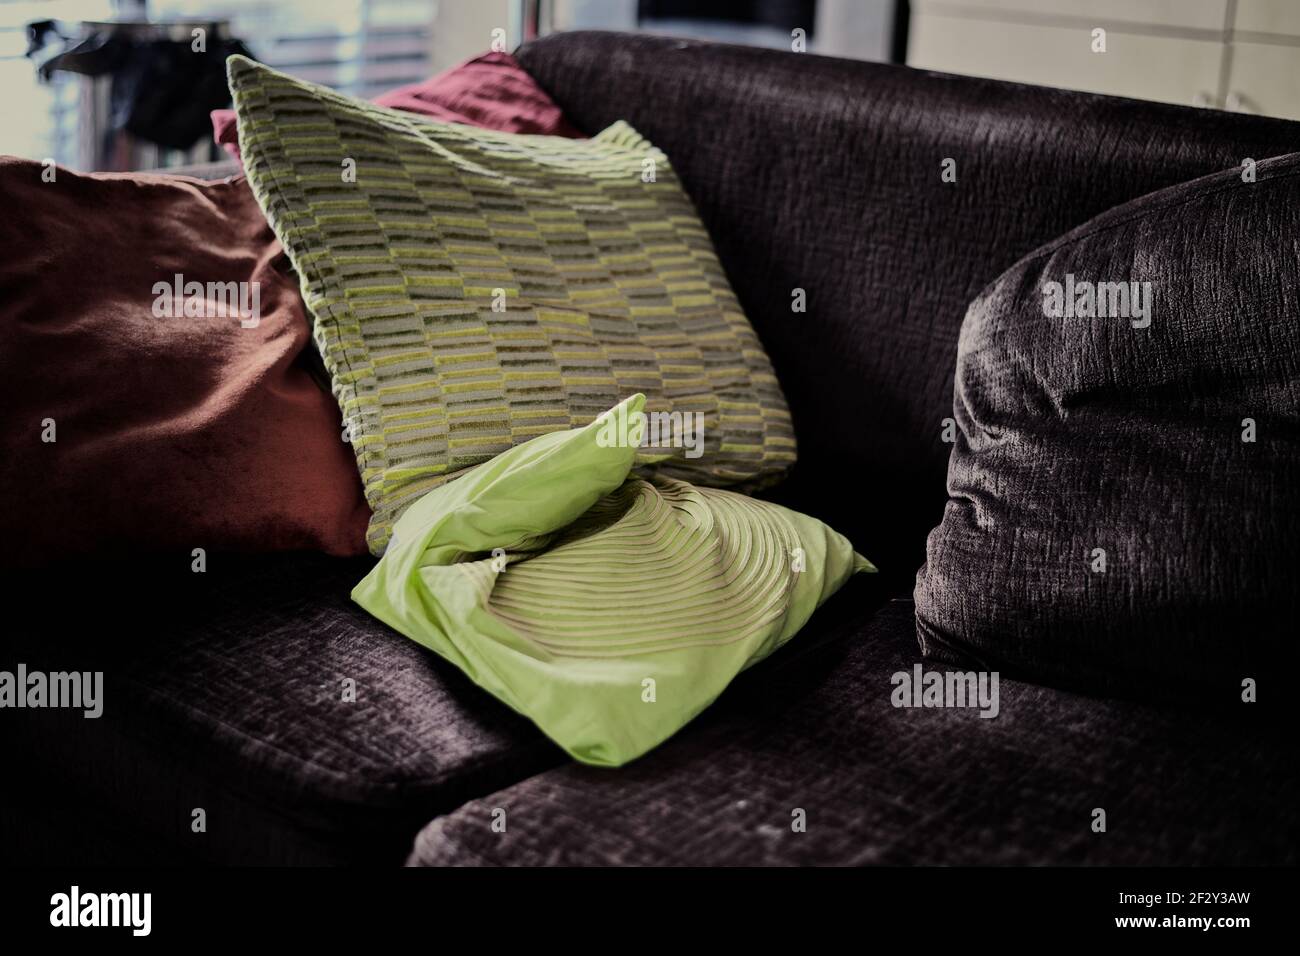 Immagine ad alto contrasto di cuscini verdi su un divano in regolazione interna Foto Stock